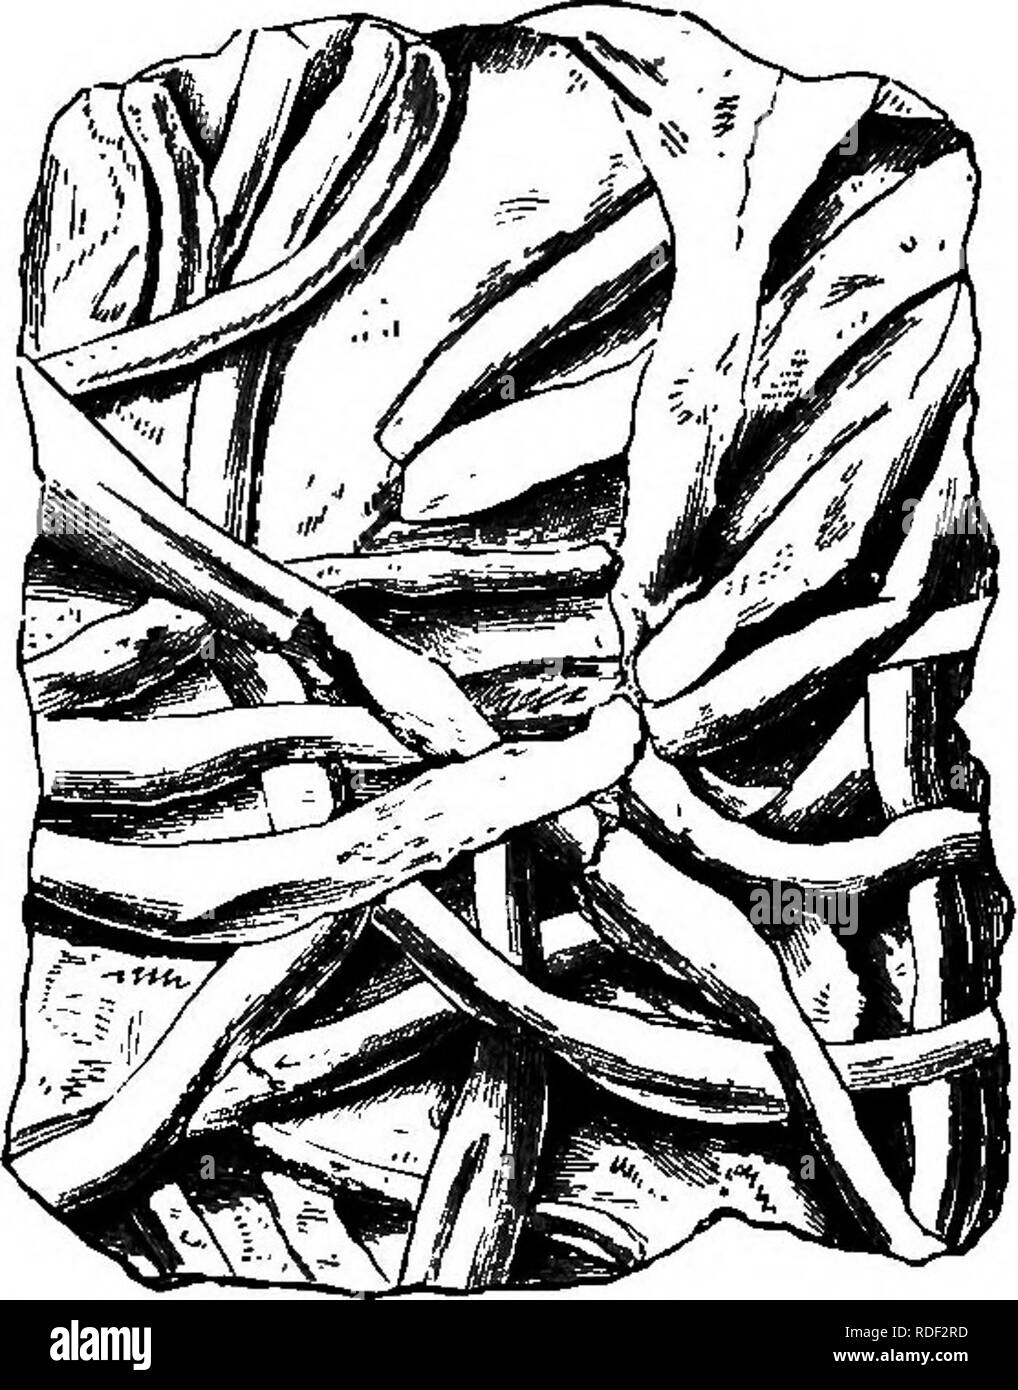 . Die geologische Geschichte der Pflanzen. Paläobotanik; 1888. 30 DIE GEOLOGISCHE GESCHICHTE VON PFLANZEN. Aufschriften zu PalcBOchorda, Palmphycus und ScoUthus haben ihre Orte hier. Viele Beispiele sehr anschauliche, die Art der Bildung der Eindrücke sind, die von der kanadischen Felsen (Abb. gewährt. 8). Verzweigung genannten Vordrucke Licrophycus von Billings, und einige von denen zu Buthotrephis, Halle, sowie strahlende Markierungen auf ScotoUthus, Gyrophyllites und terophycus, sind ex-plained durch die NL-ing burrows von Würmern durch Nathorst und der Autor illustriert. As-tropolithon, ein Stockfoto